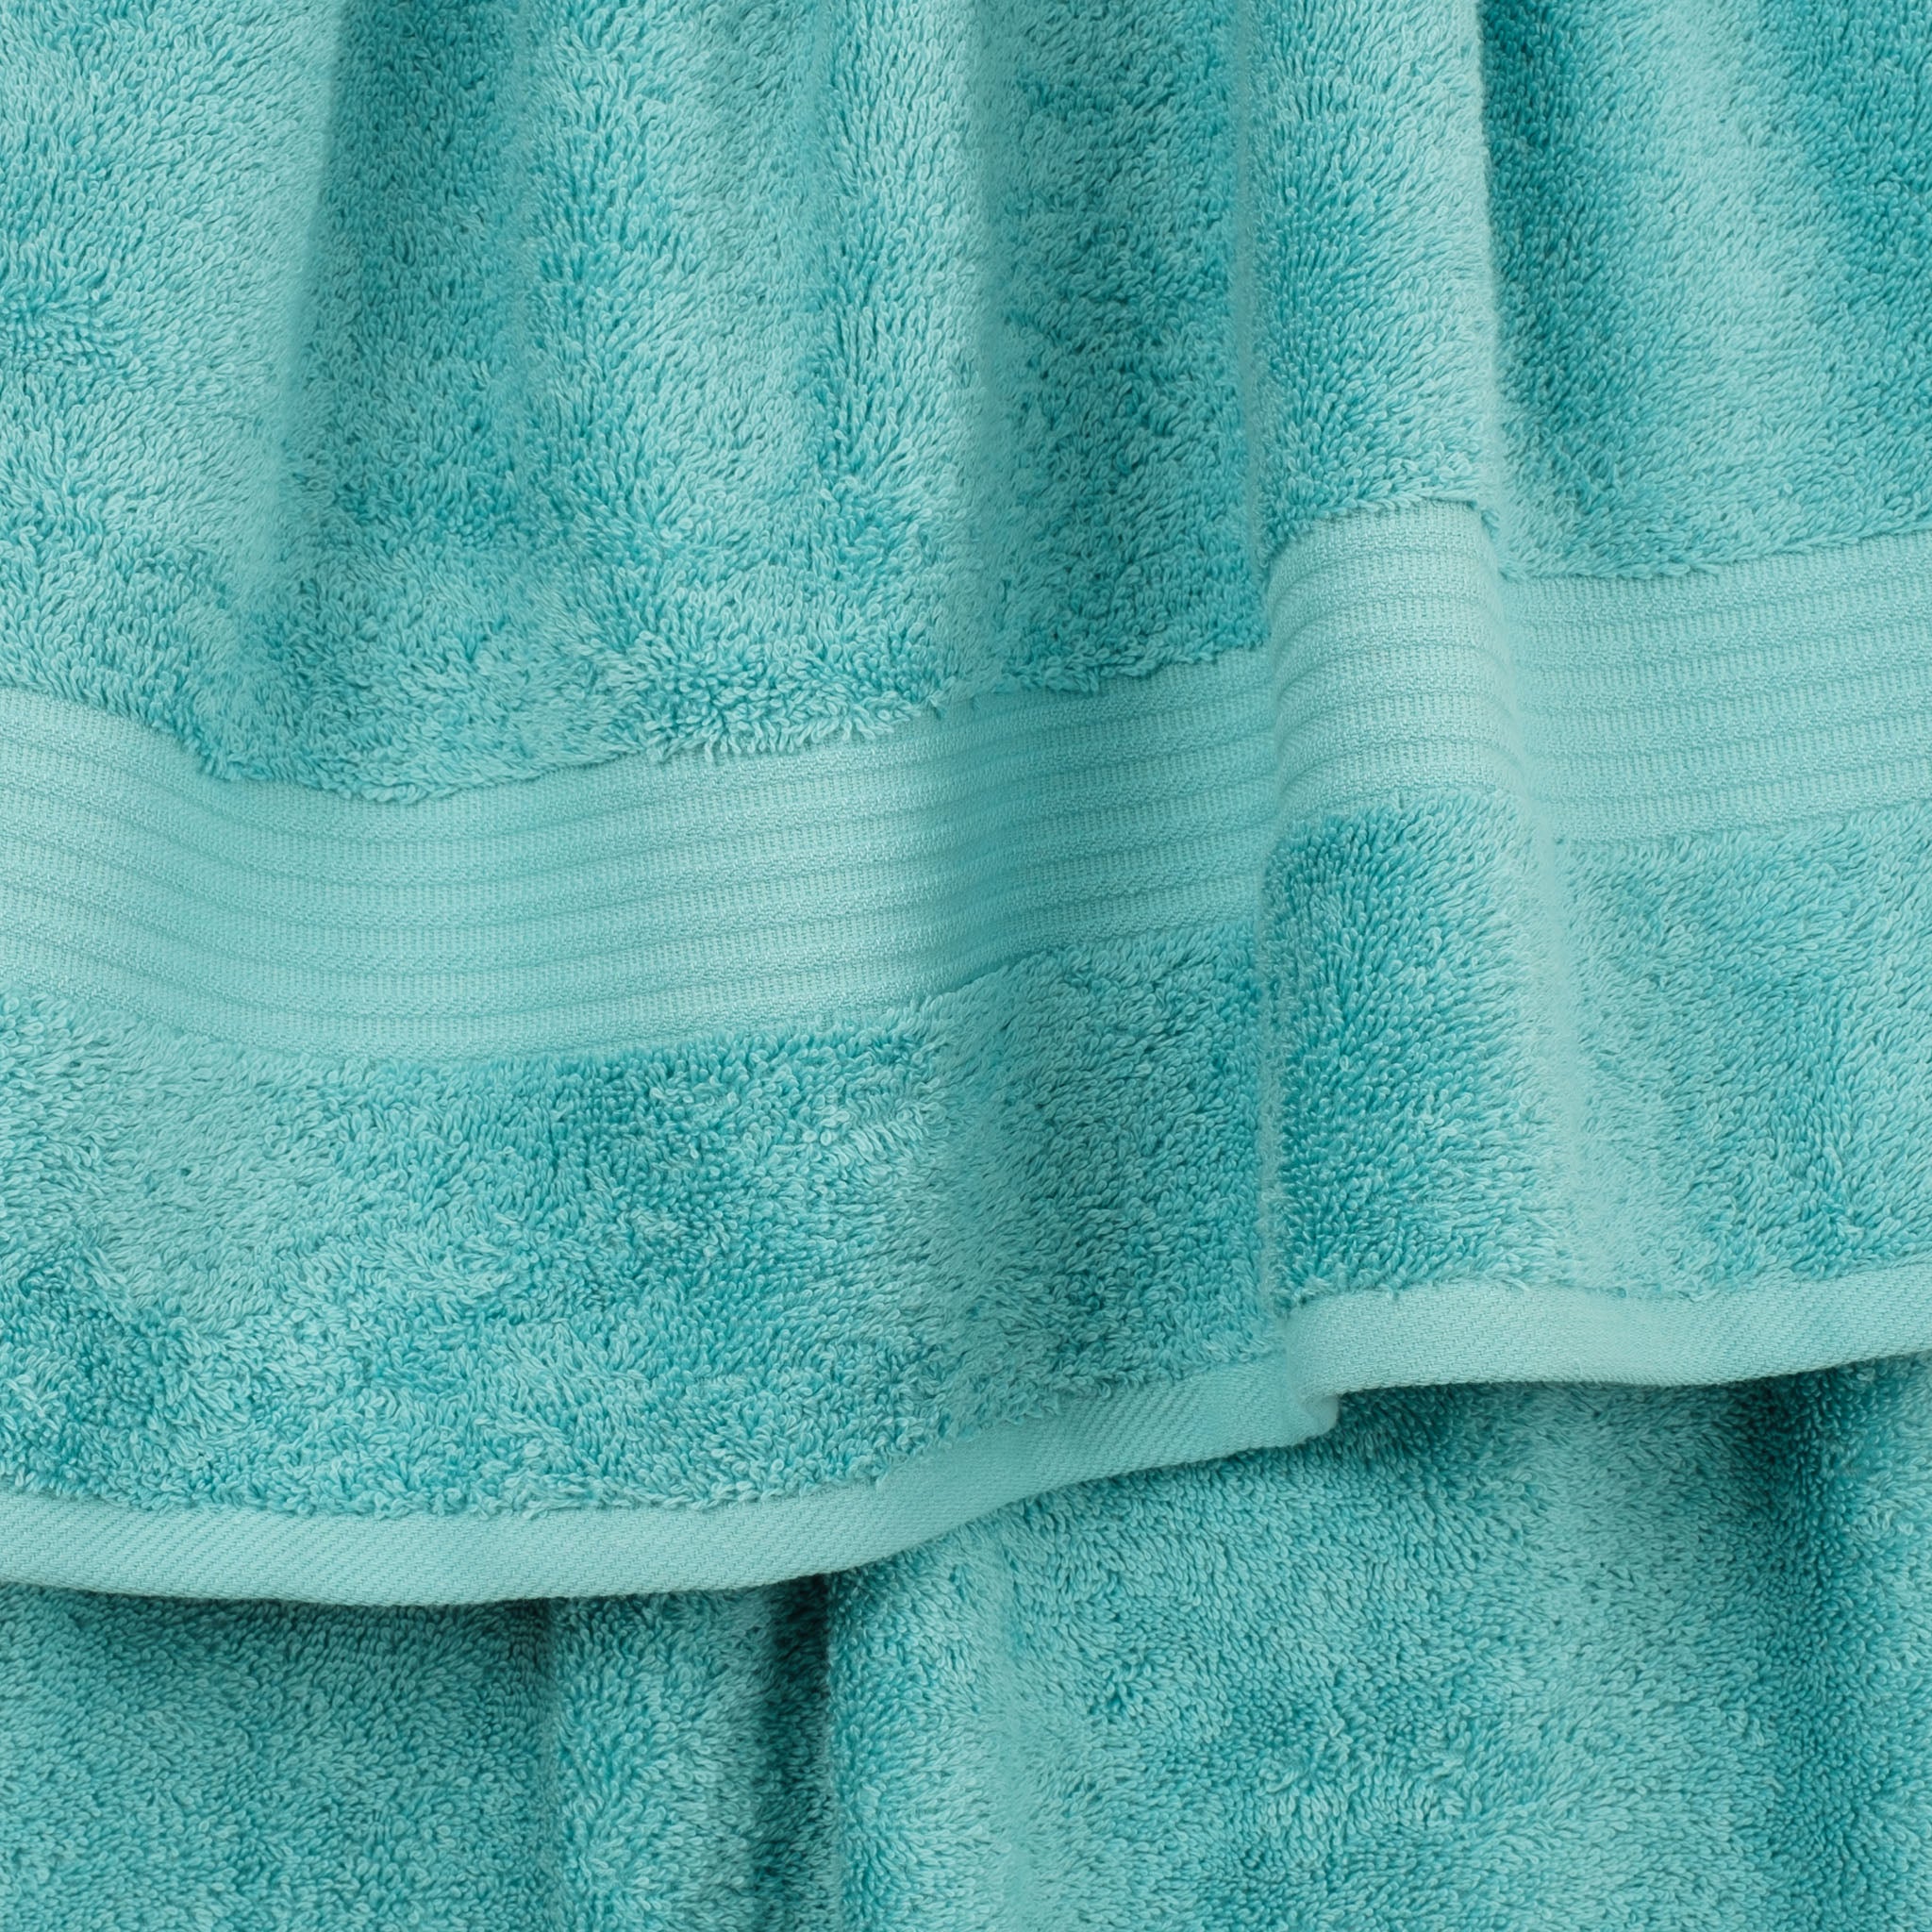 American Soft Linen Bekos 100% Cotton Turkish Towels, 4 Piece Bath Towel Set -turquoise-blue-03